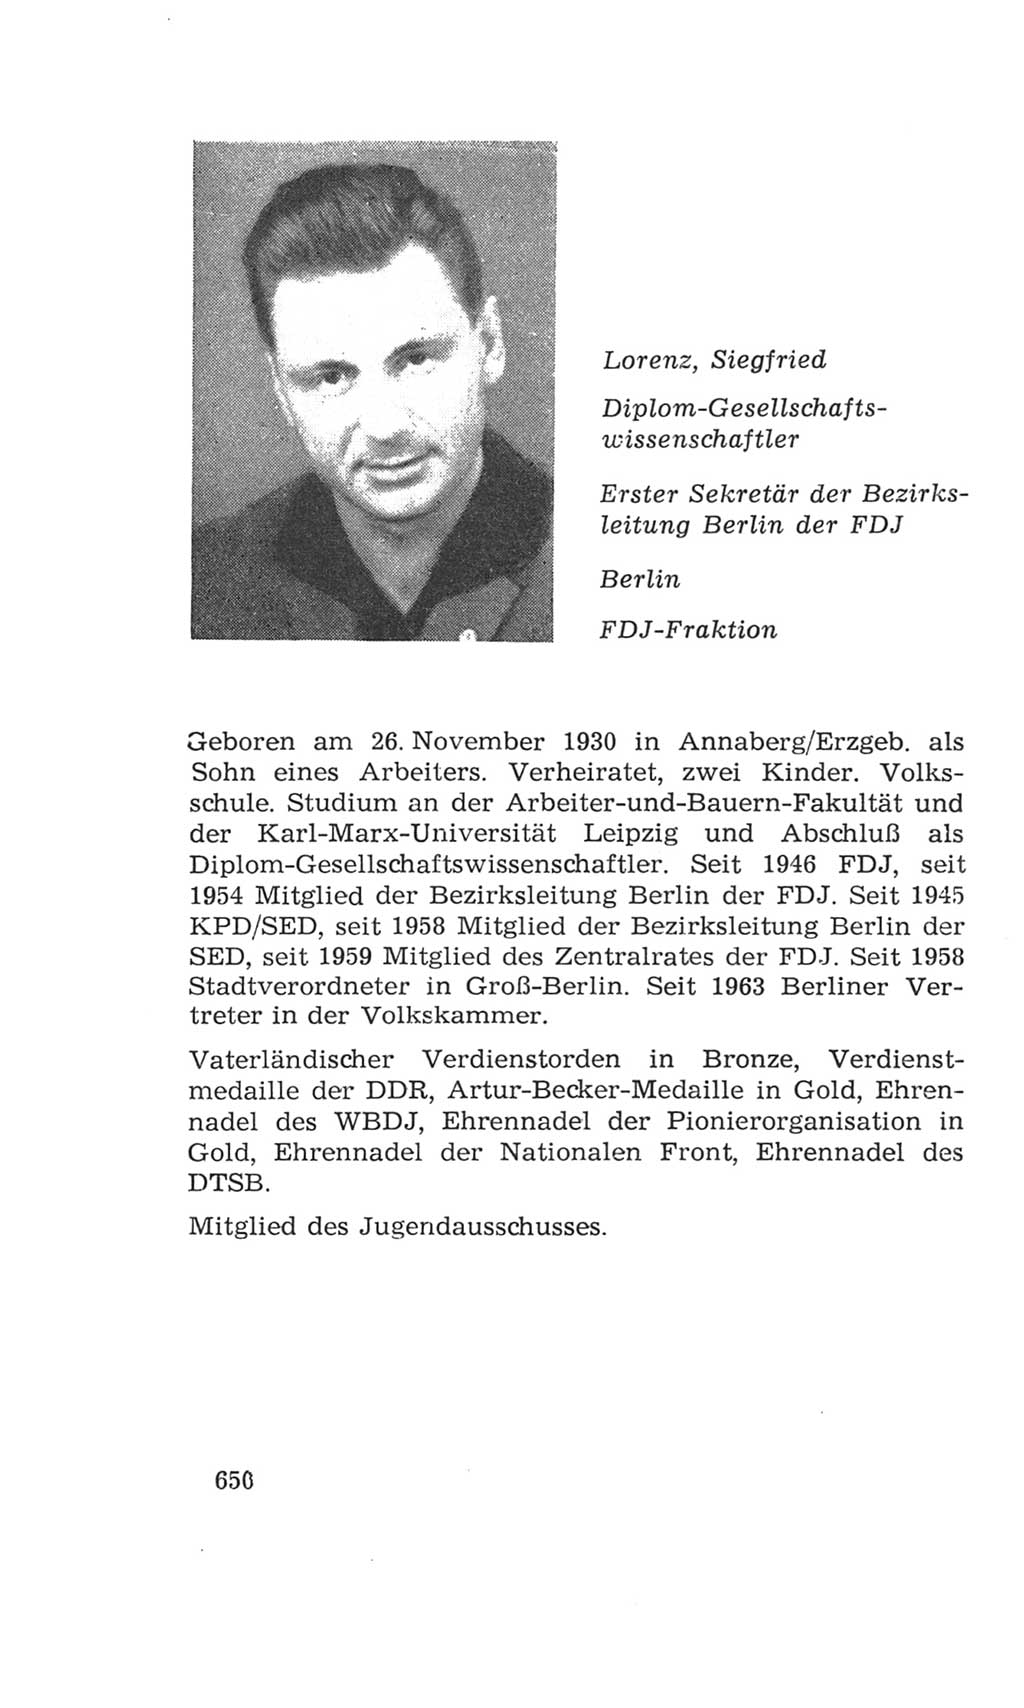 Volkskammer (VK) der Deutschen Demokratischen Republik (DDR), 4. Wahlperiode 1963-1967, Seite 650 (VK. DDR 4. WP. 1963-1967, S. 650)